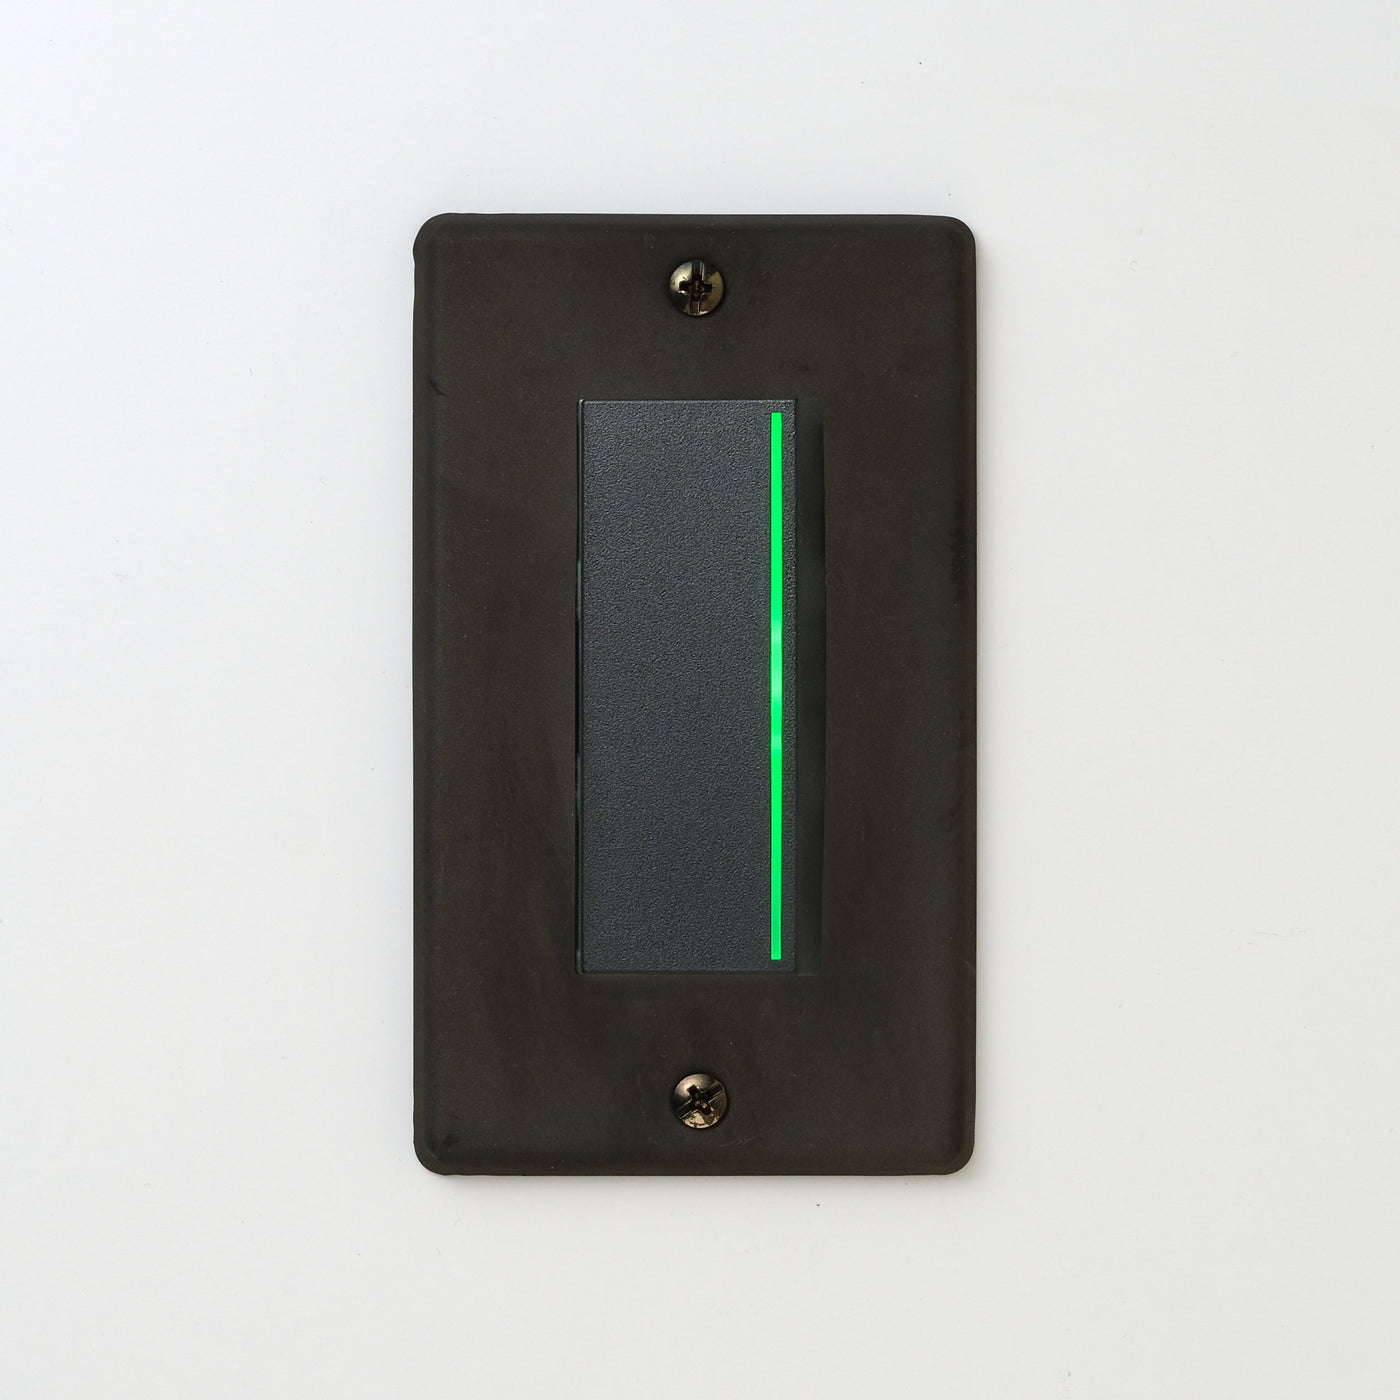 ステンレス（黒染）プレート <br>+ NK 片切、3路ガイドランプ（グリーン）付スイッチシングル  ブラック